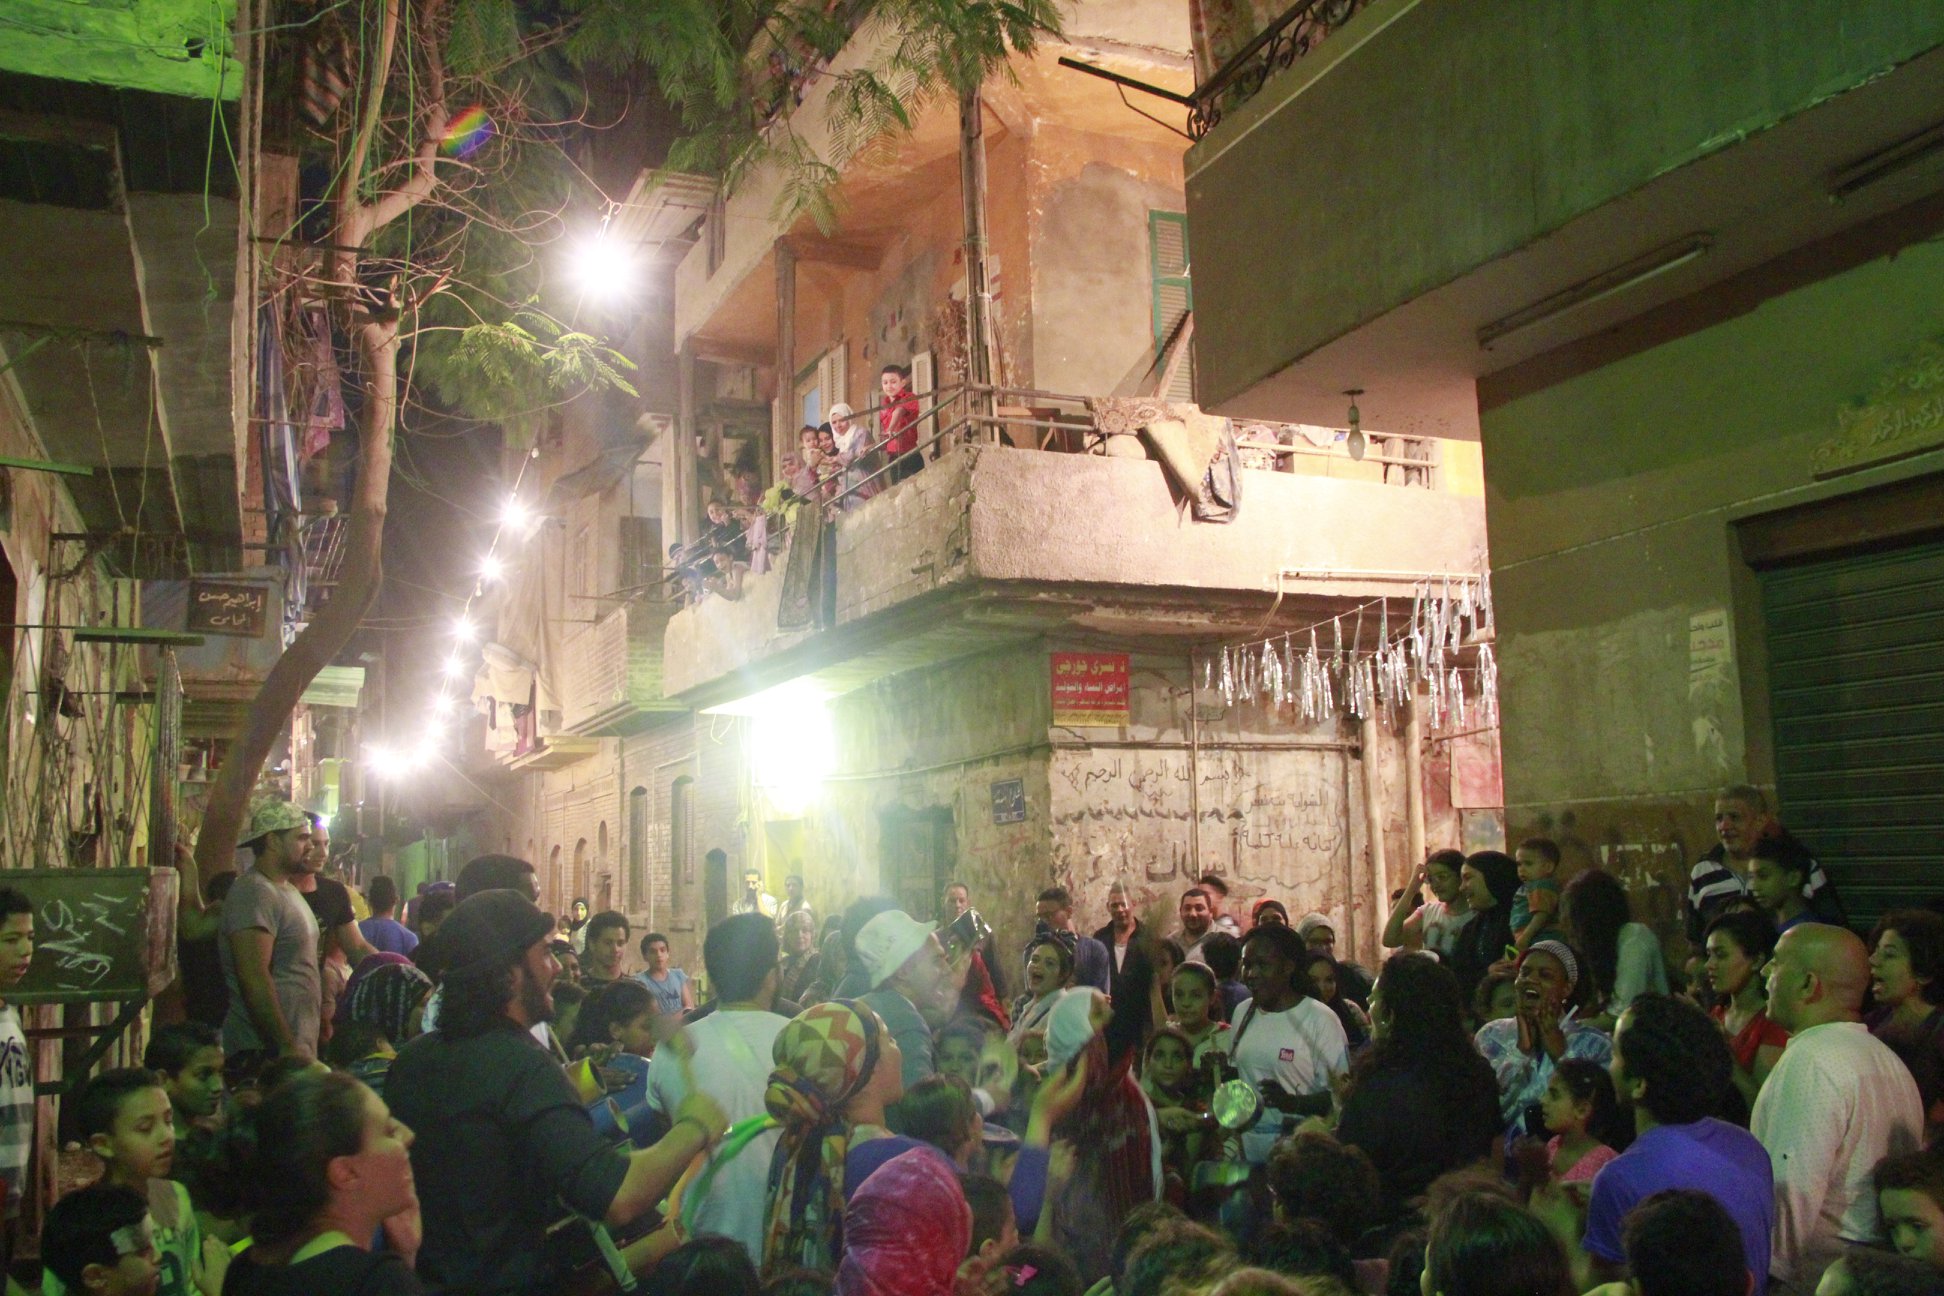 حشد كبير في احد شوارع القاهرة يحيط بممثلي 'ناس'